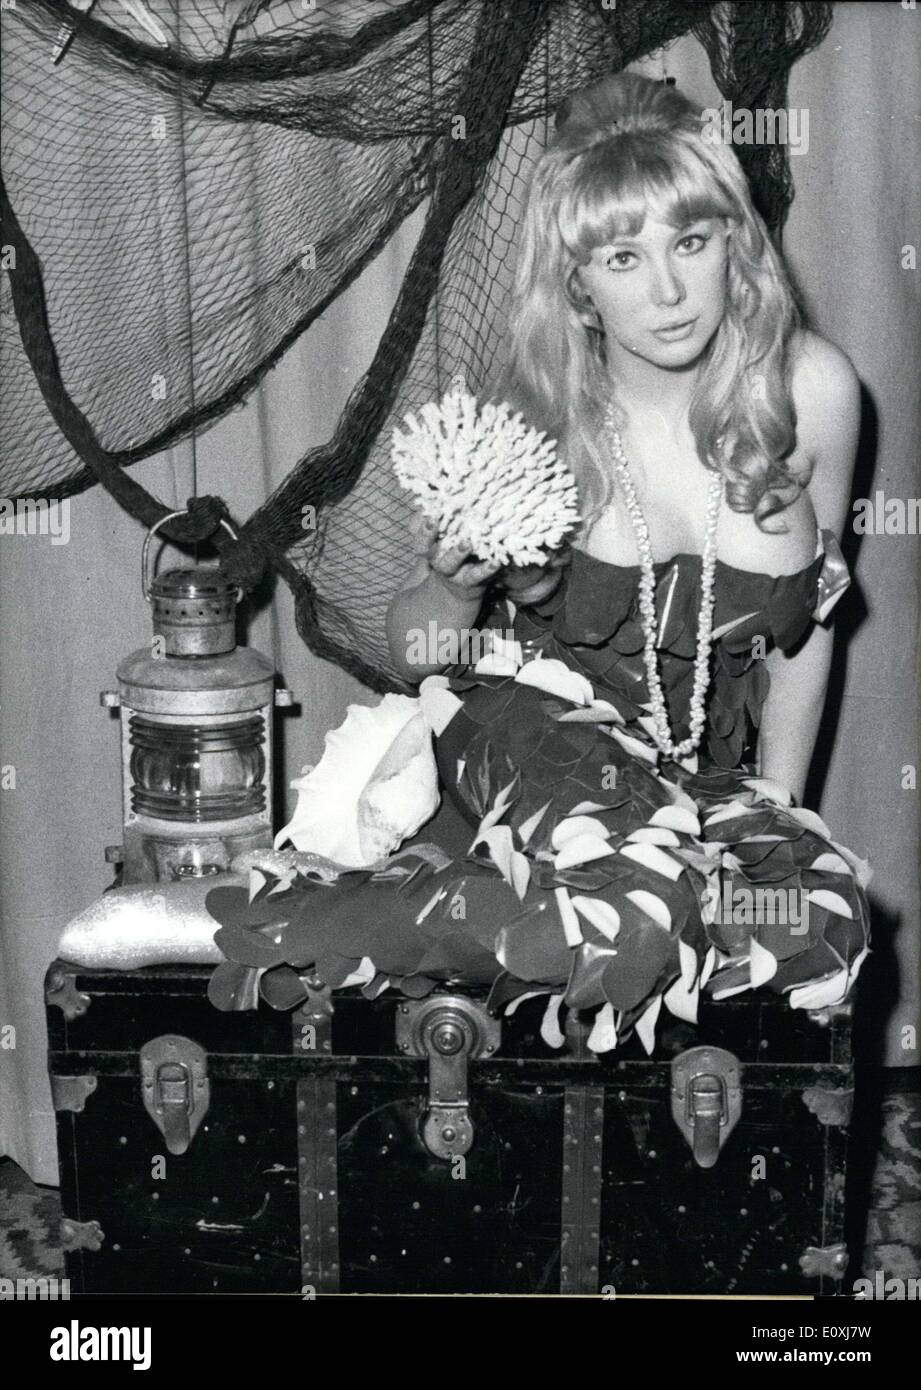 Janv. 05, 1967 - Berlin actrice Britt Lindberg veut errer dans le ''Land de  Neptune'' dans les semaines à venir ! Que d'une sirène, la jeune femme  aimant s'amuser, qui préfèrent visiter